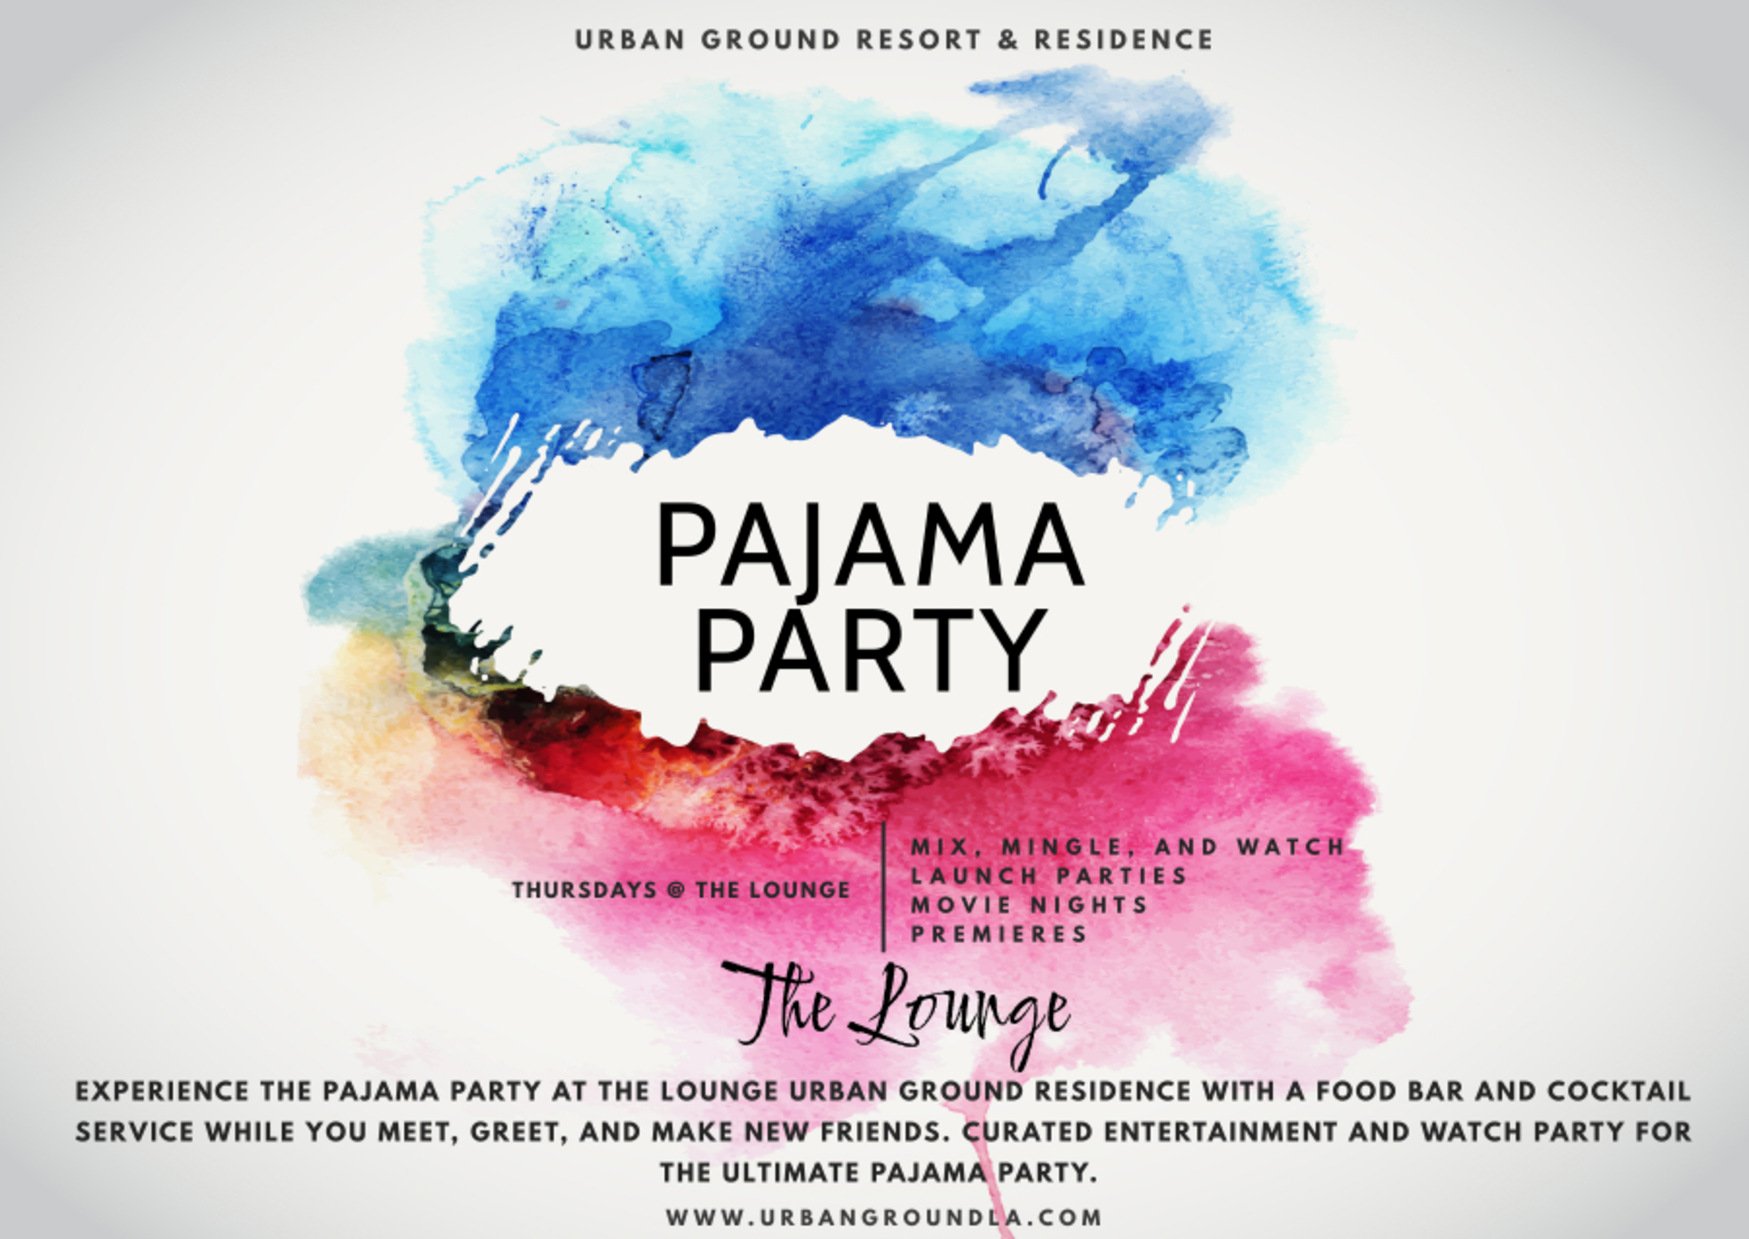 The Lounge Pajama Party Urban Ground Resort & Residence